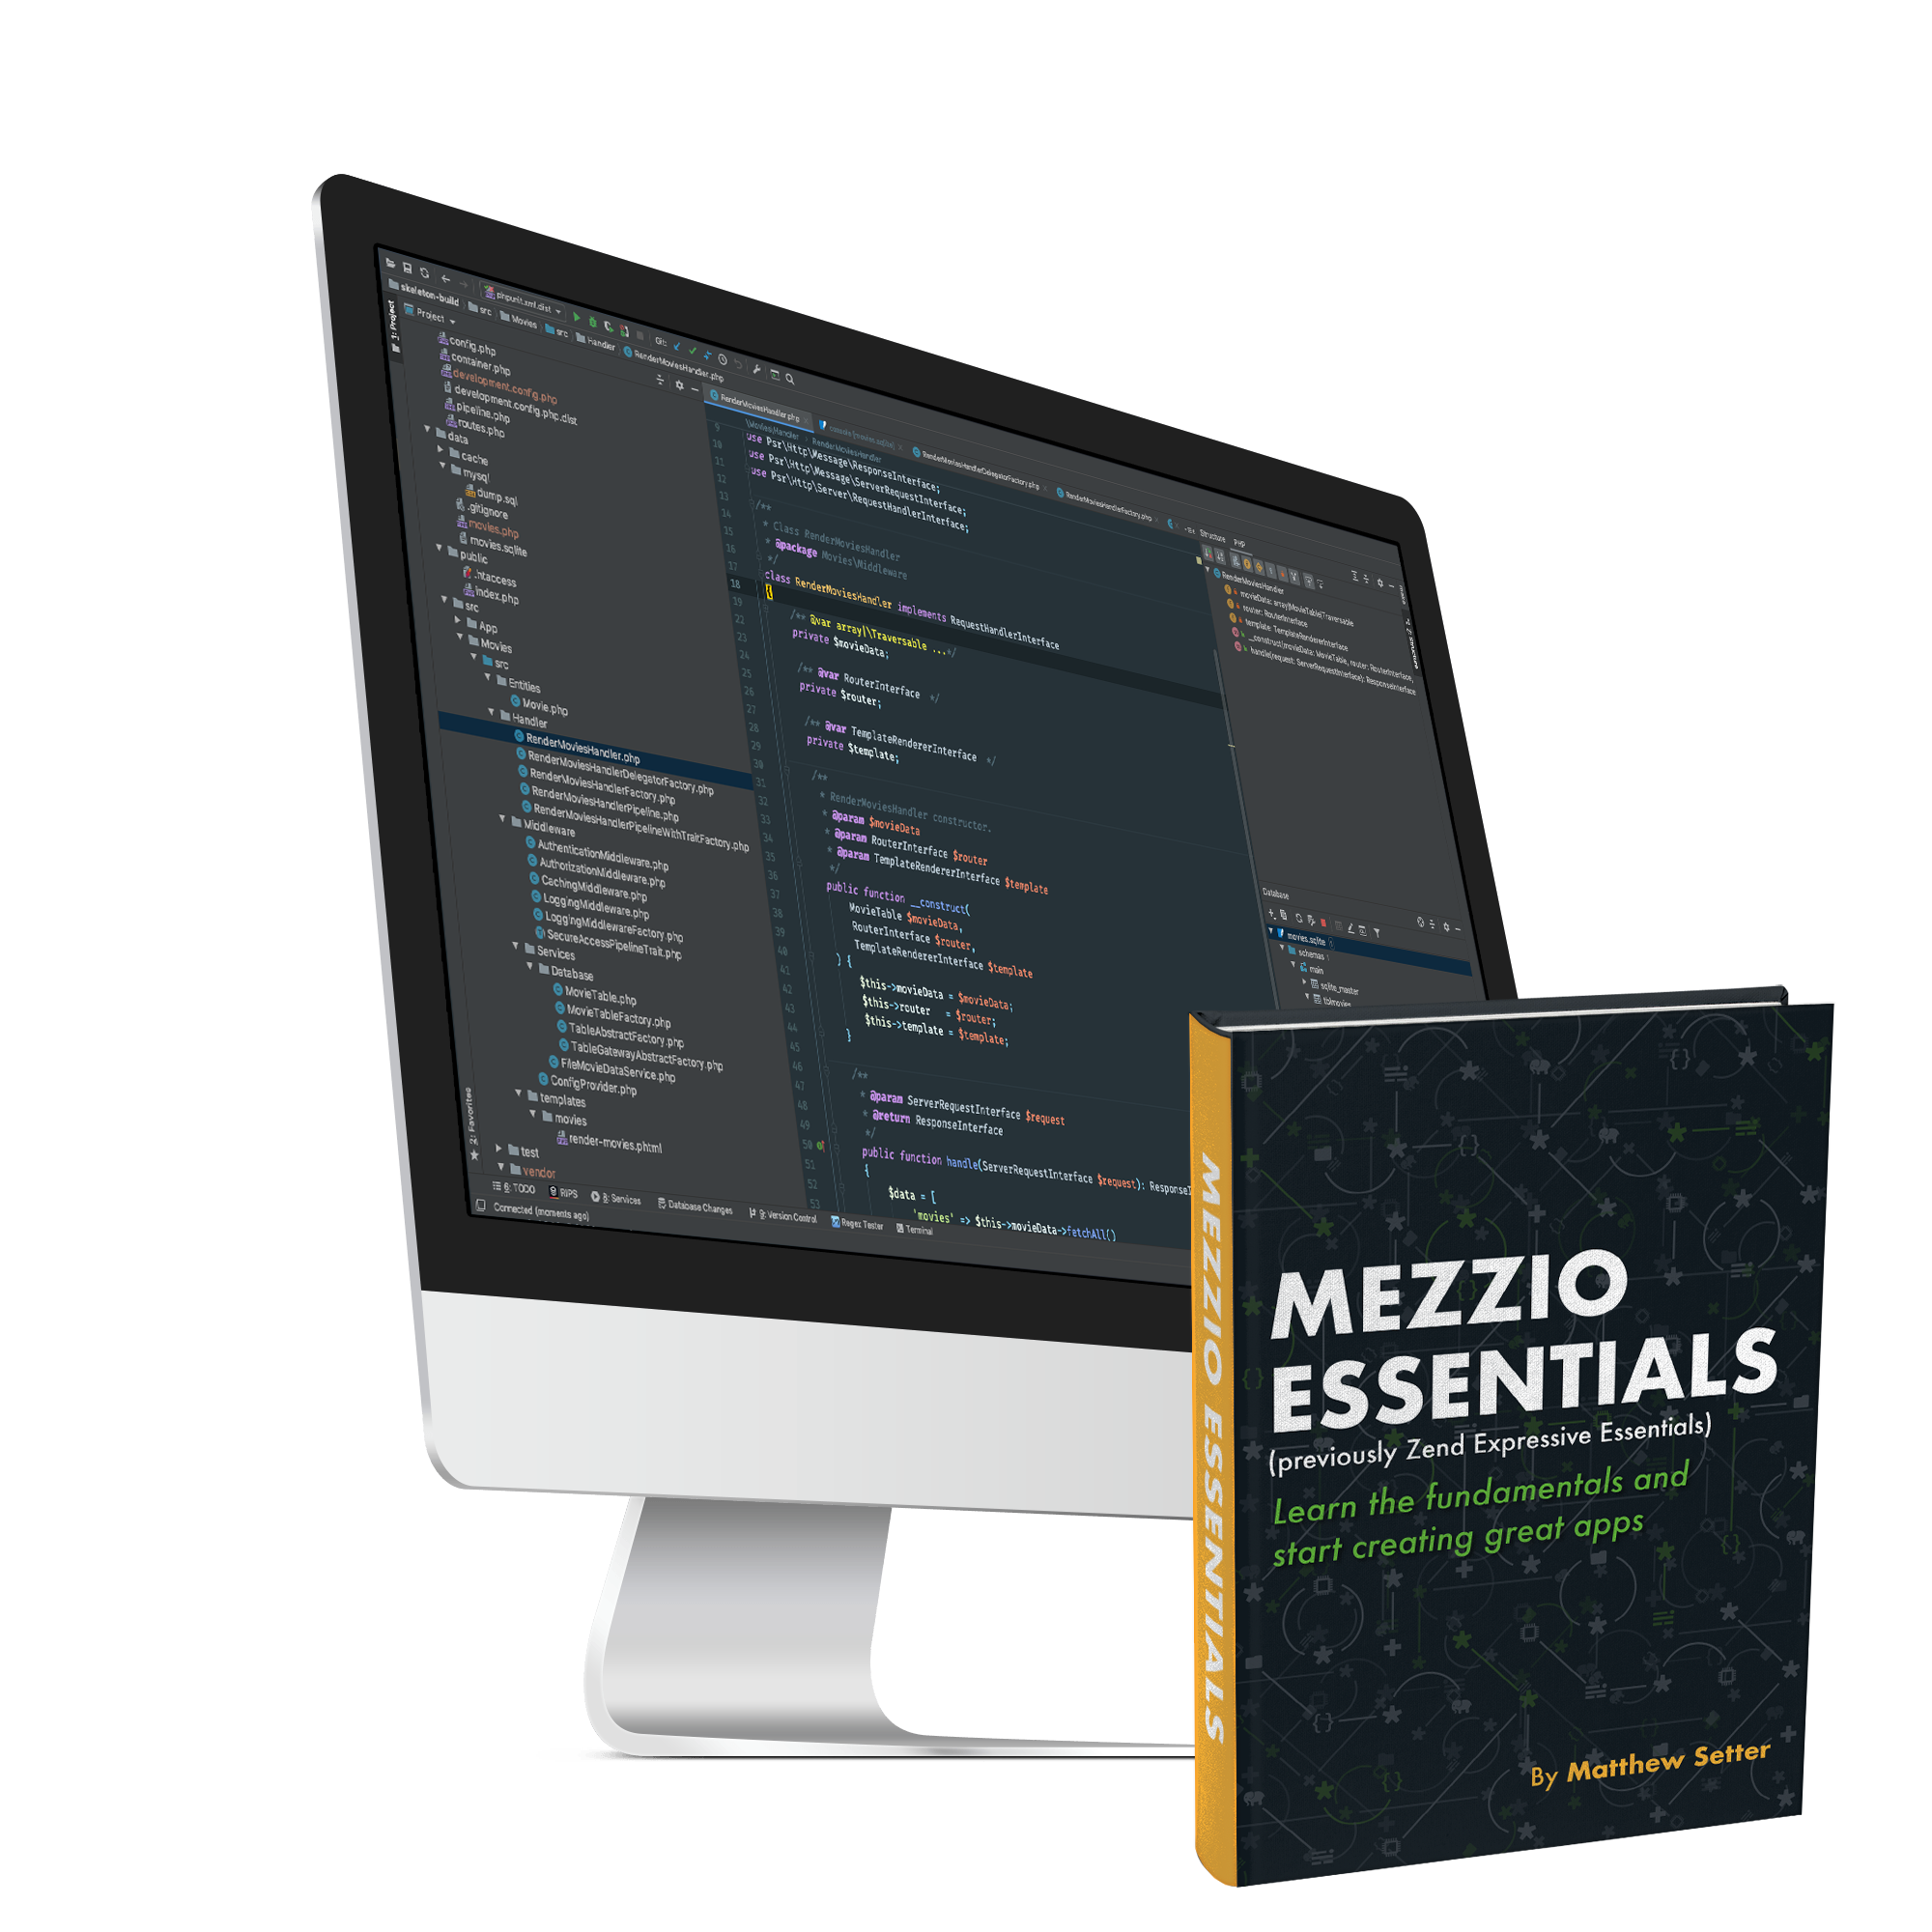 Buy Mezzio Essentials now!